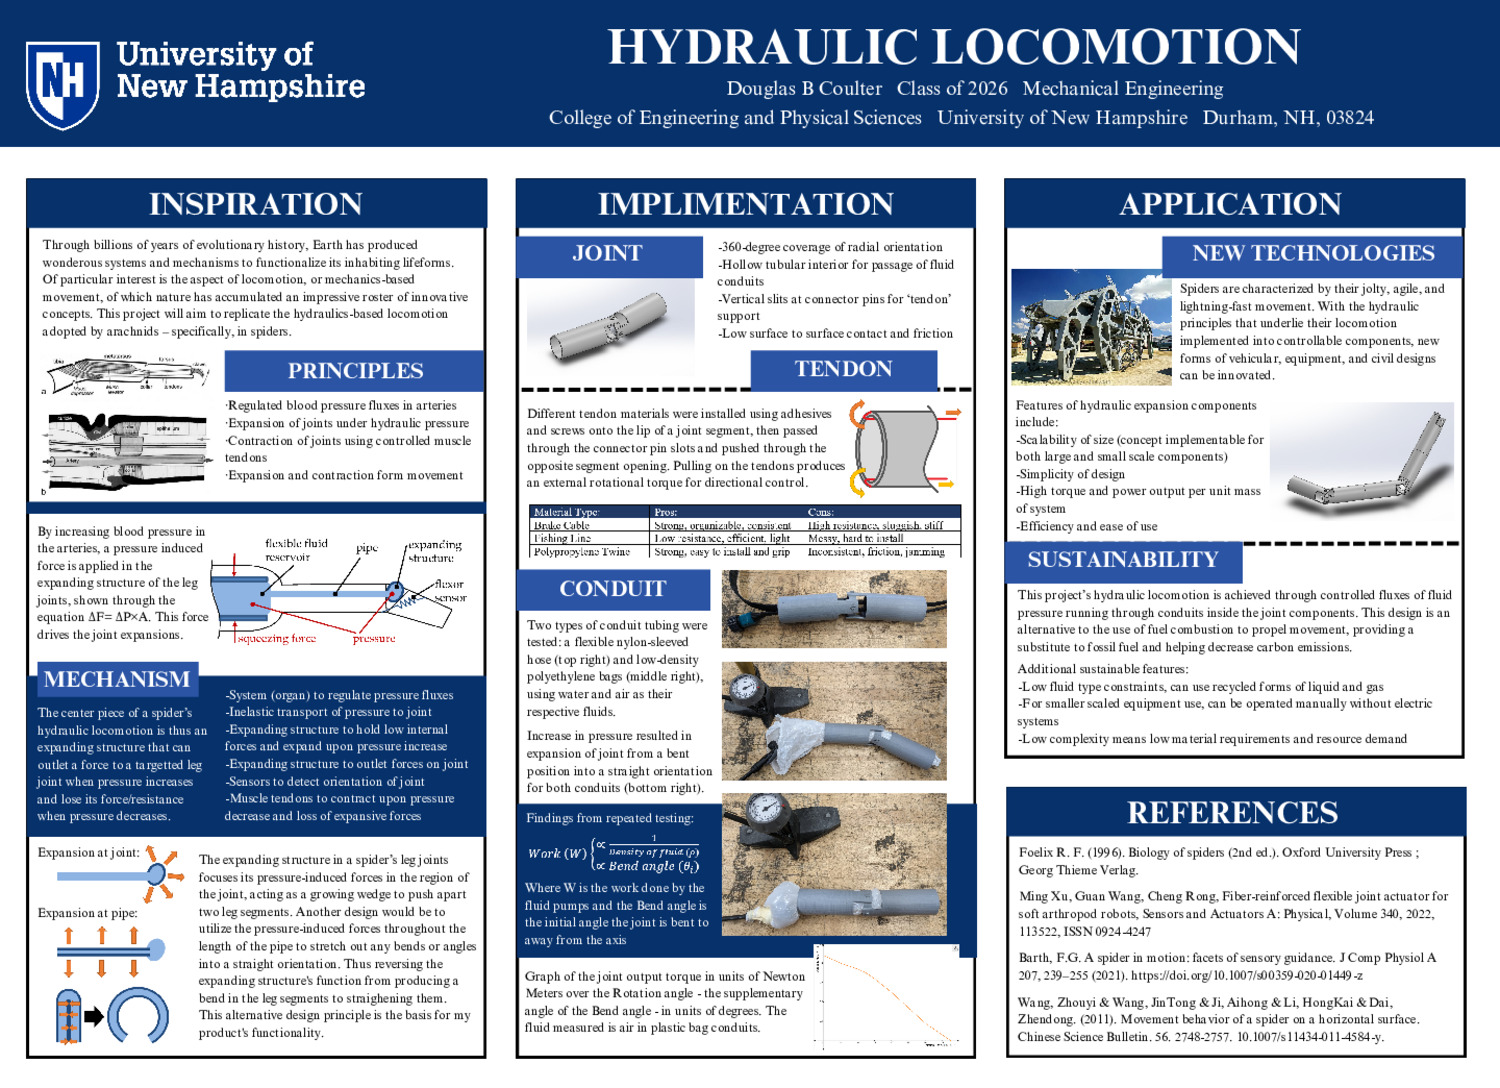 Hydraulic Locomotion by dbc1032